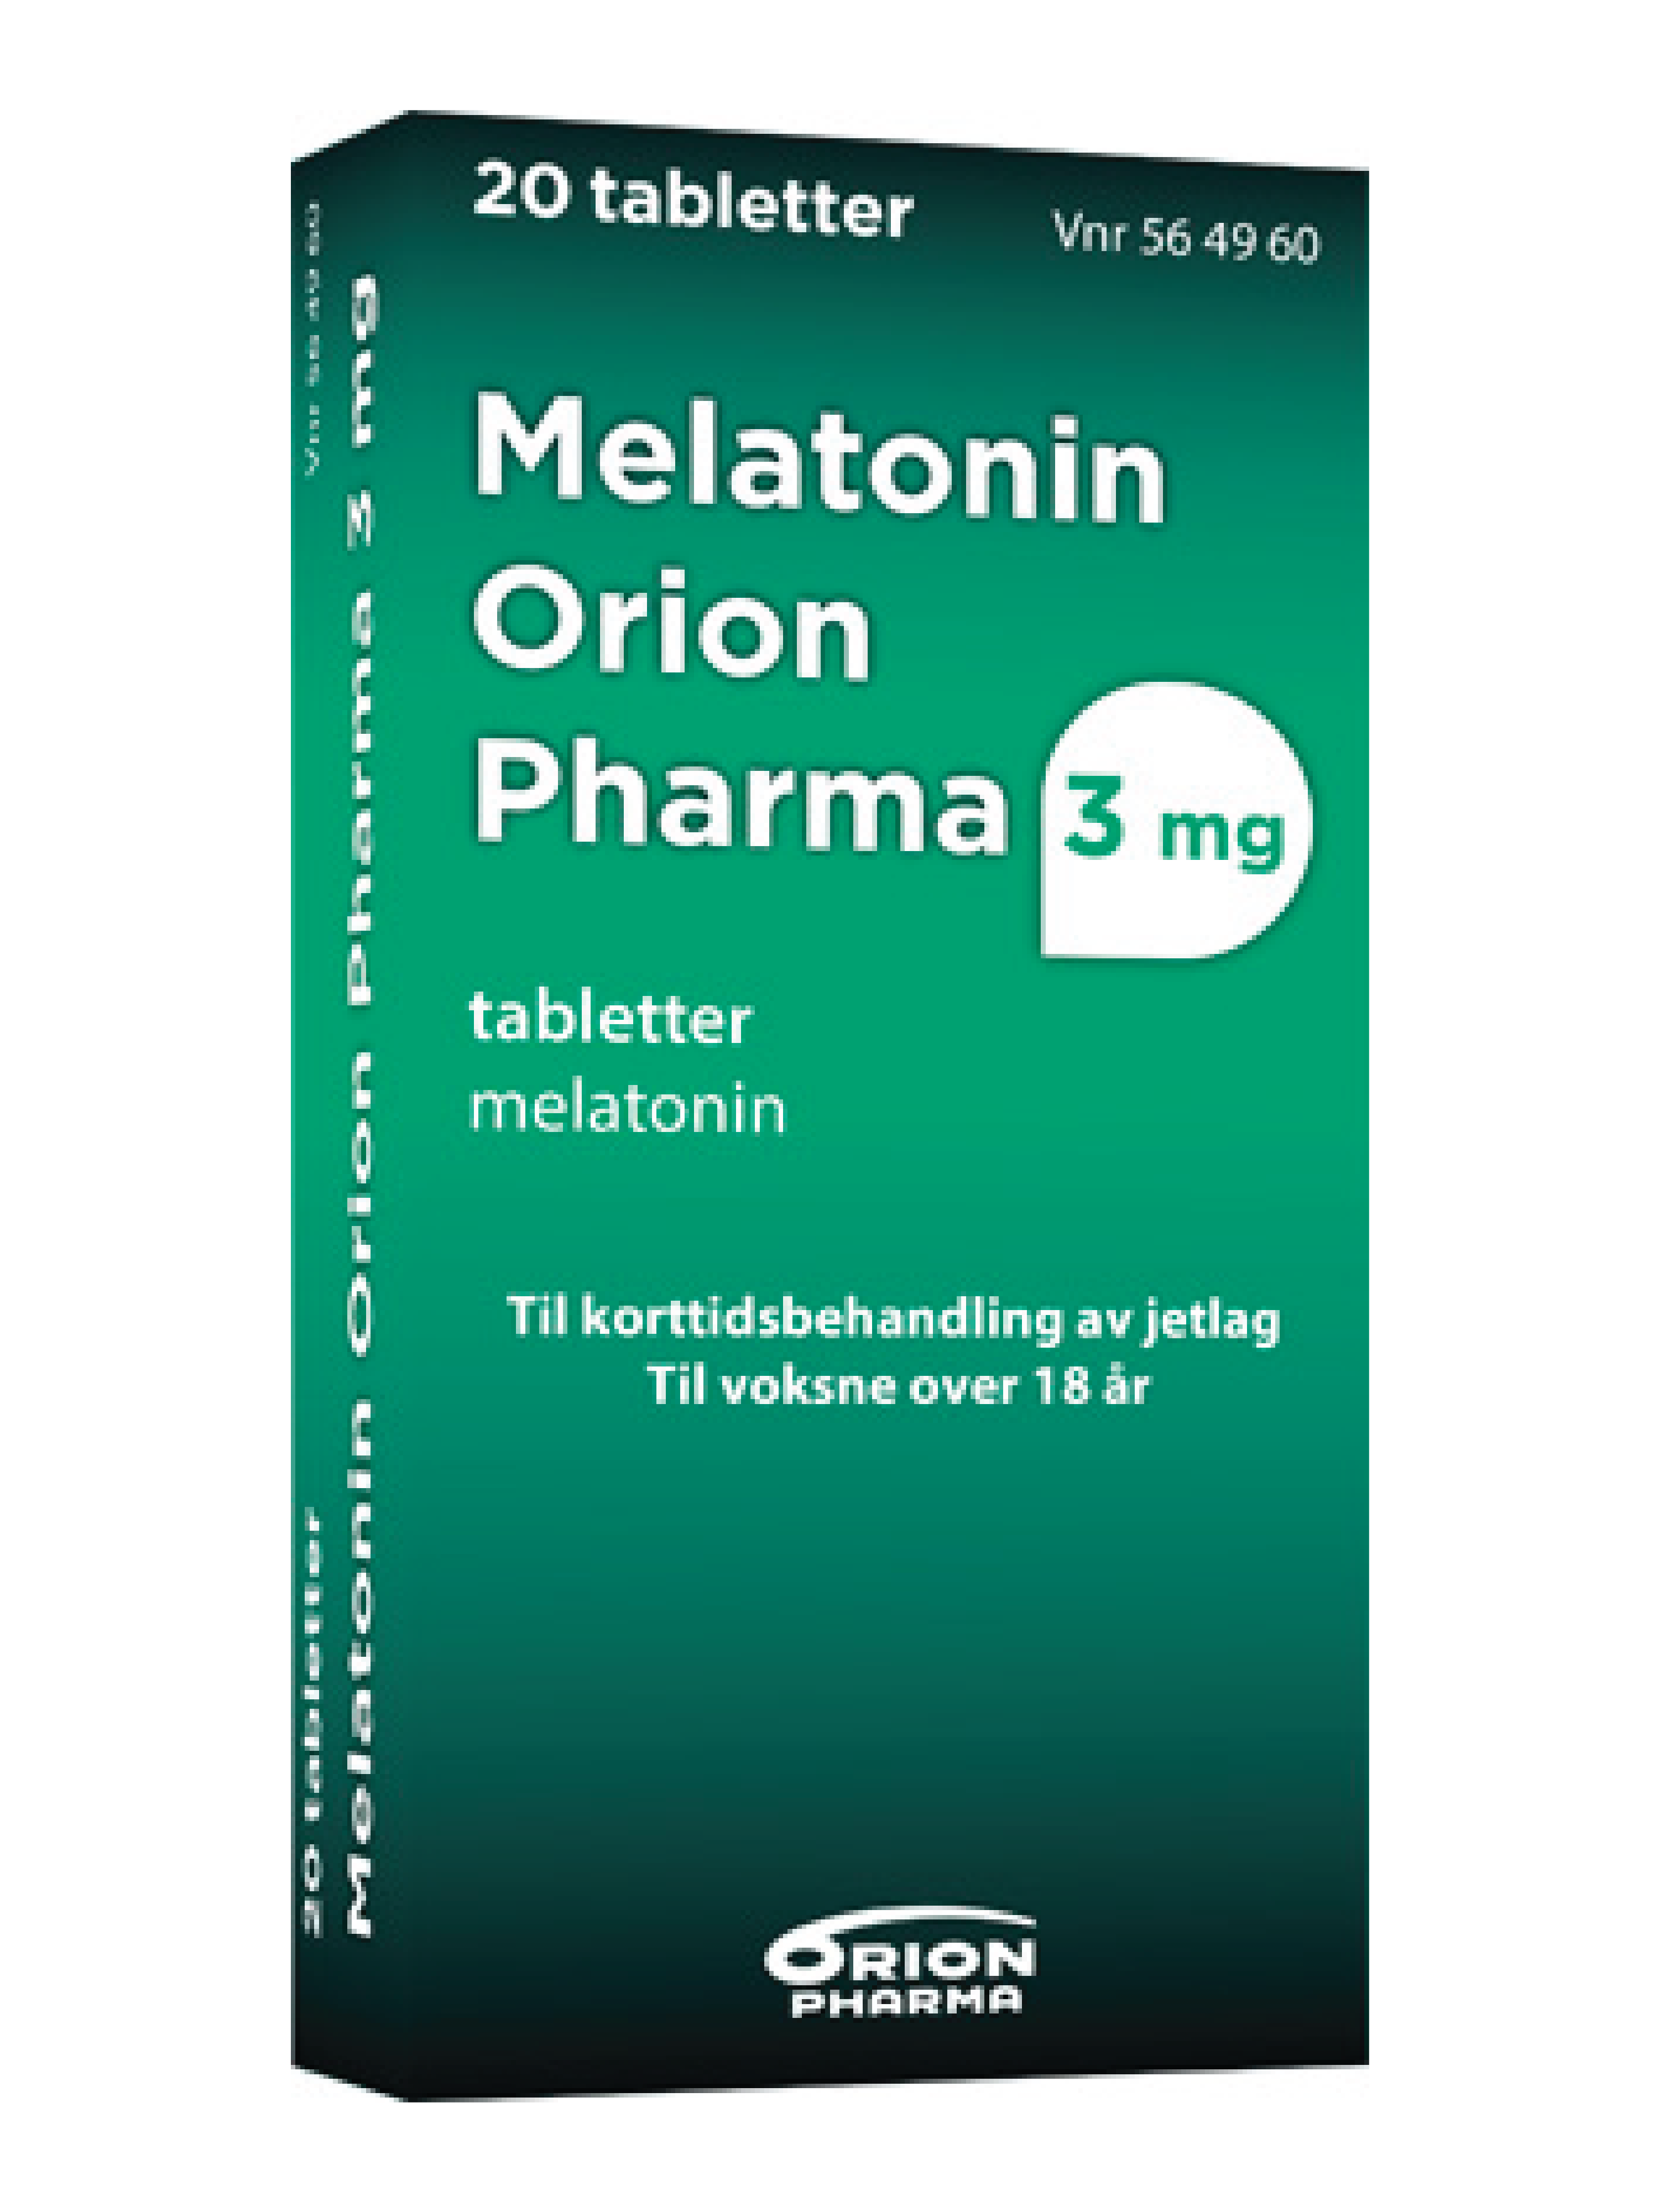 Melatonin Orion Pharma 3 mg tabletter, 20 stk.